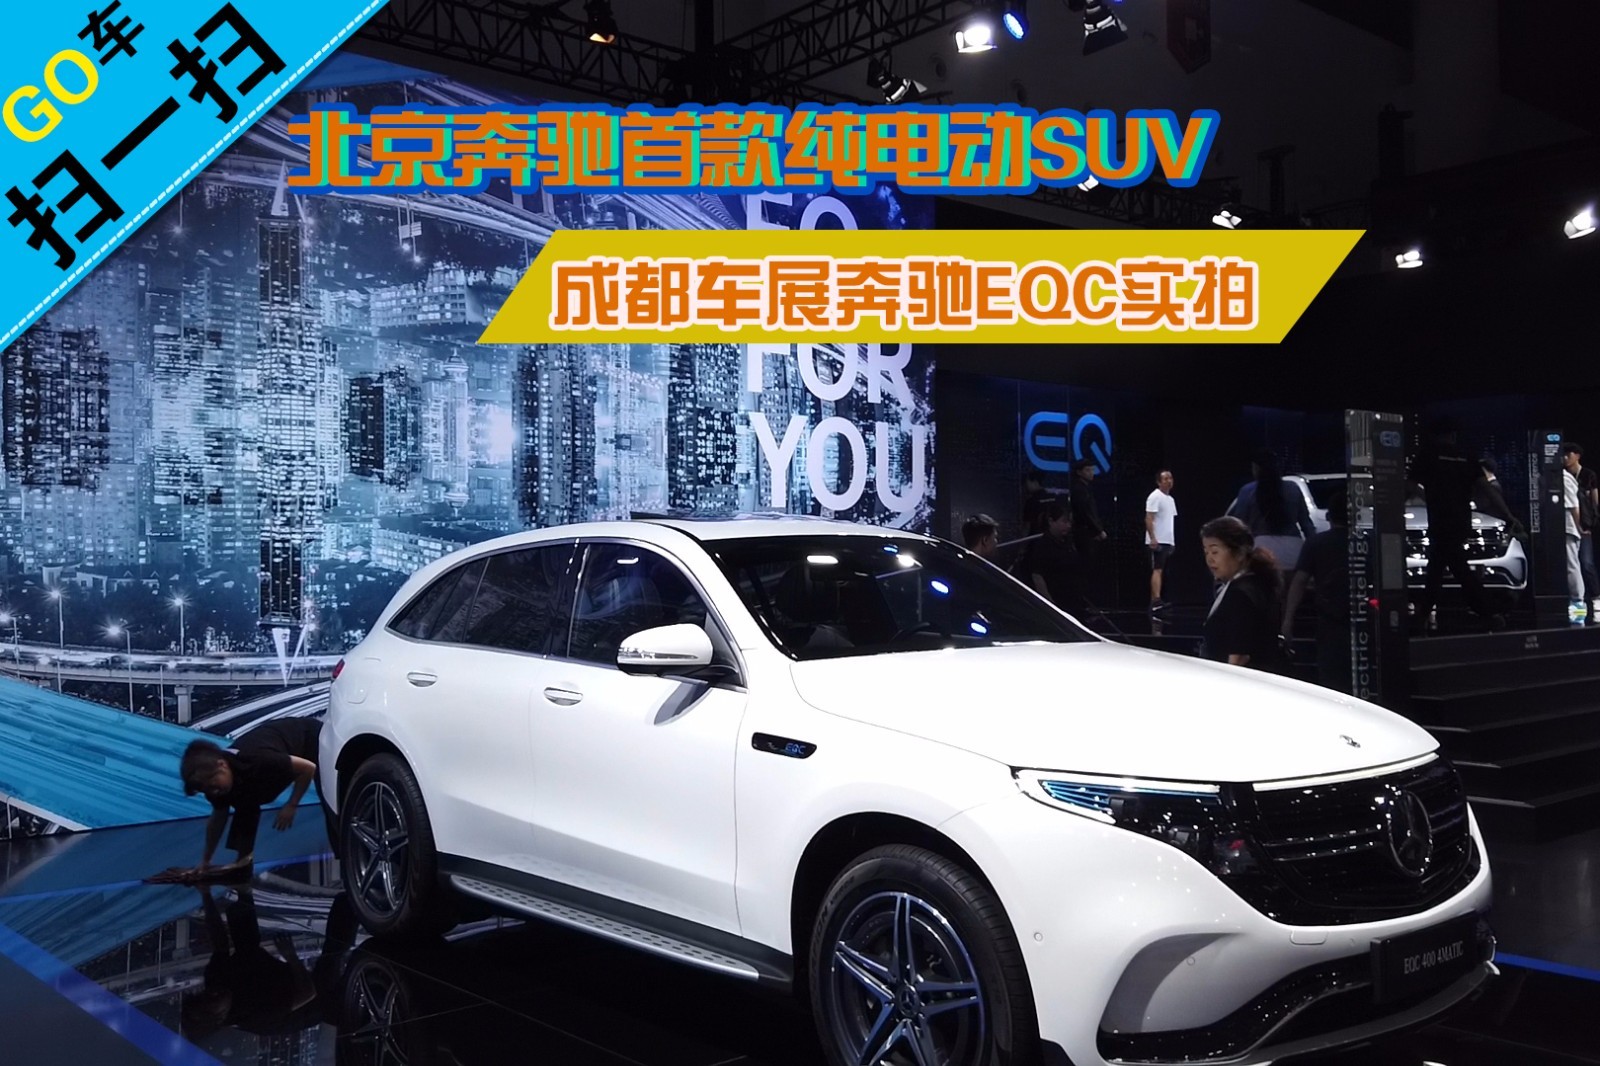 【2019成都车展】奔驰eqc首款纯电动suv 成都车展实拍